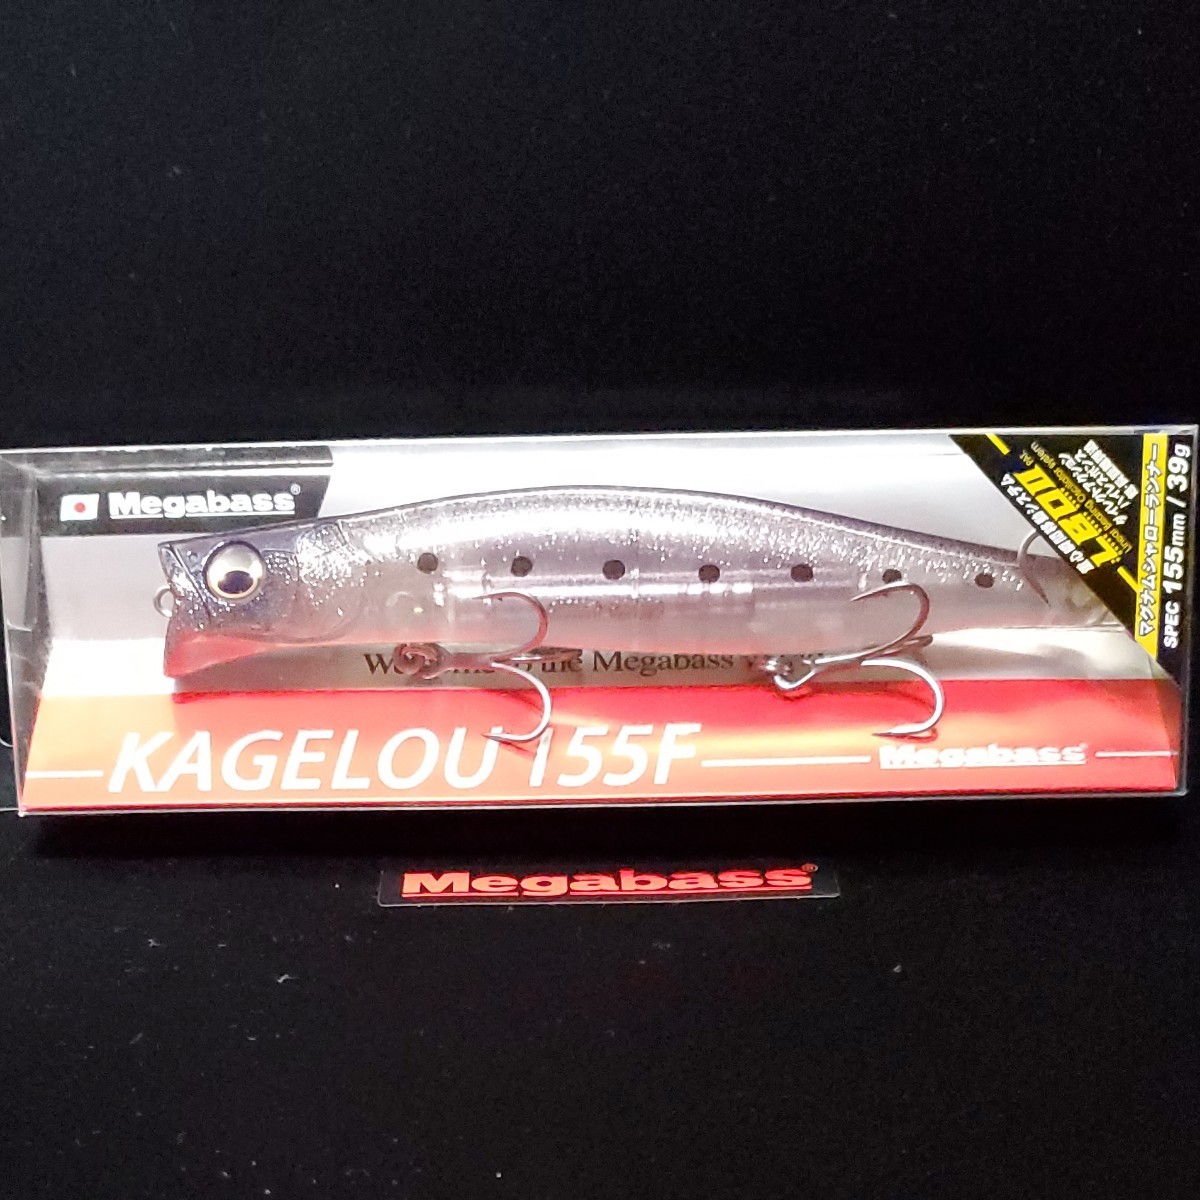 メガバス カゲロウ 155F GLX IWASHI megabass KAGELOU155F 即日発送